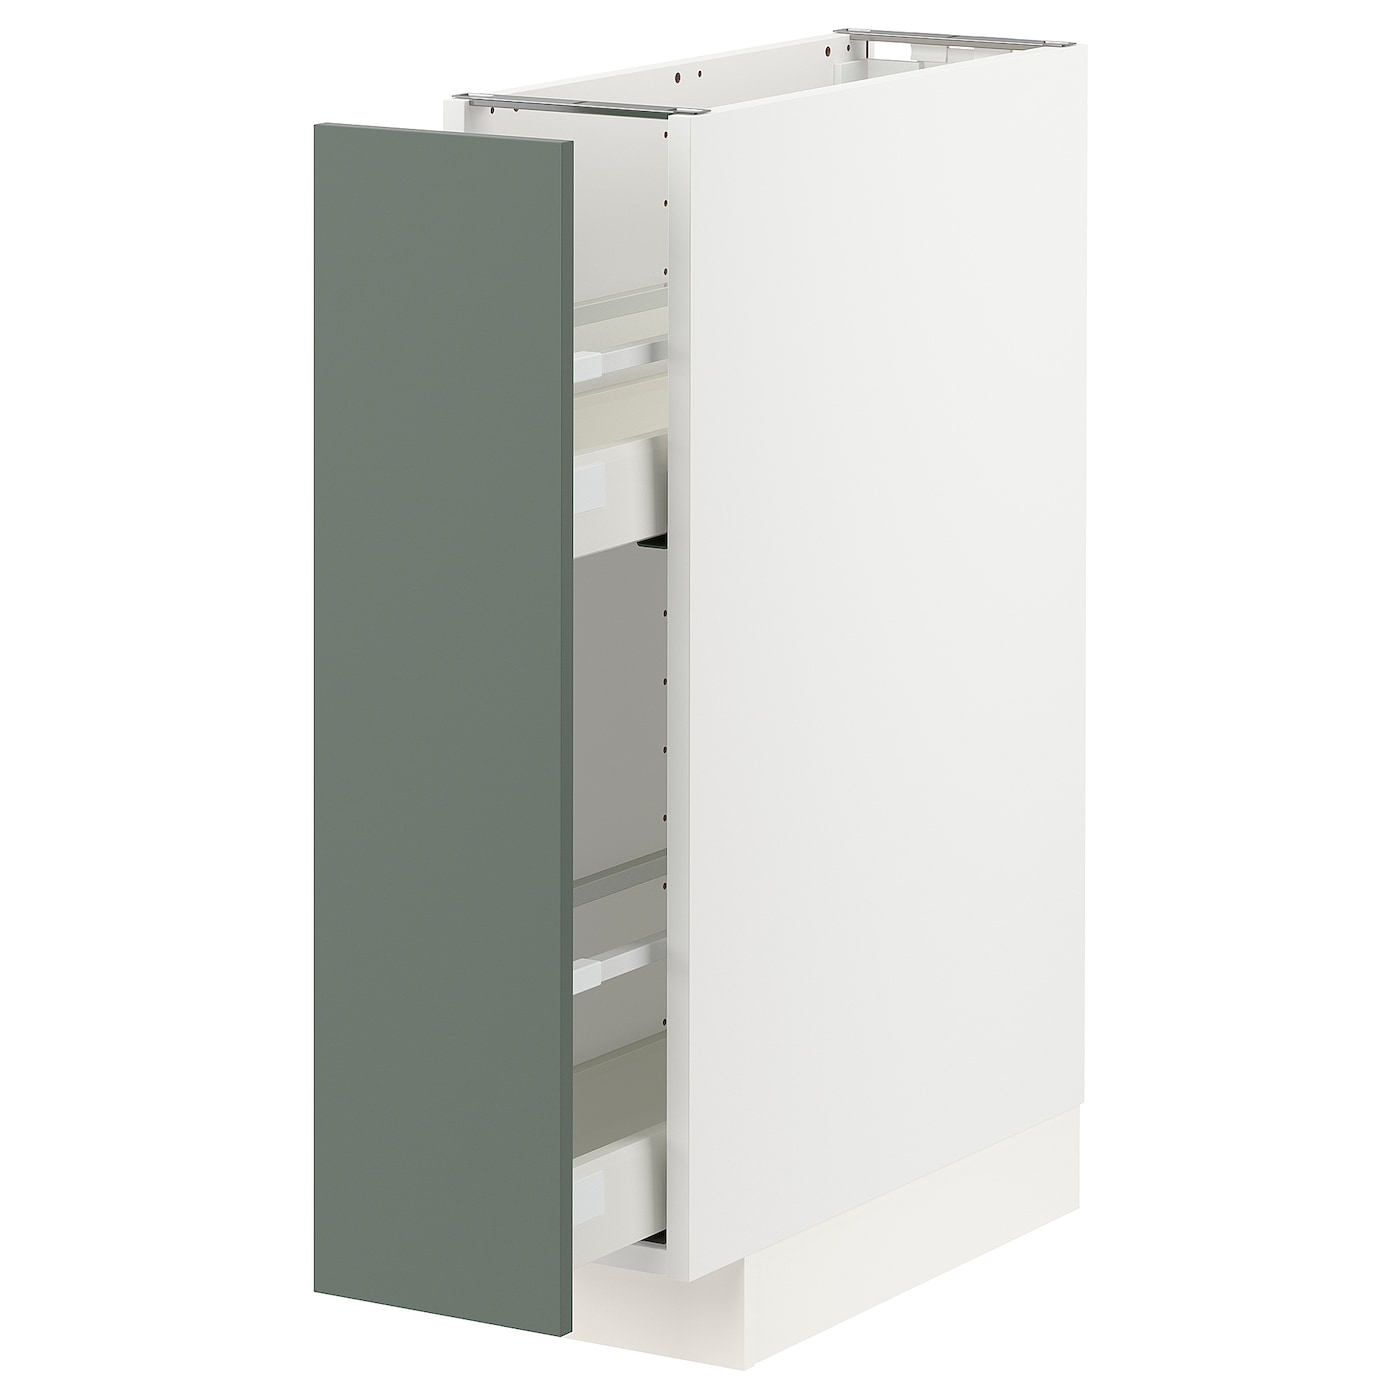 Напольный кухонный шкаф  - IKEA METOD MAXIMERA, 88x62x20см, белый/серо-зеленый, МЕТОД МАКСИМЕРА ИКЕА